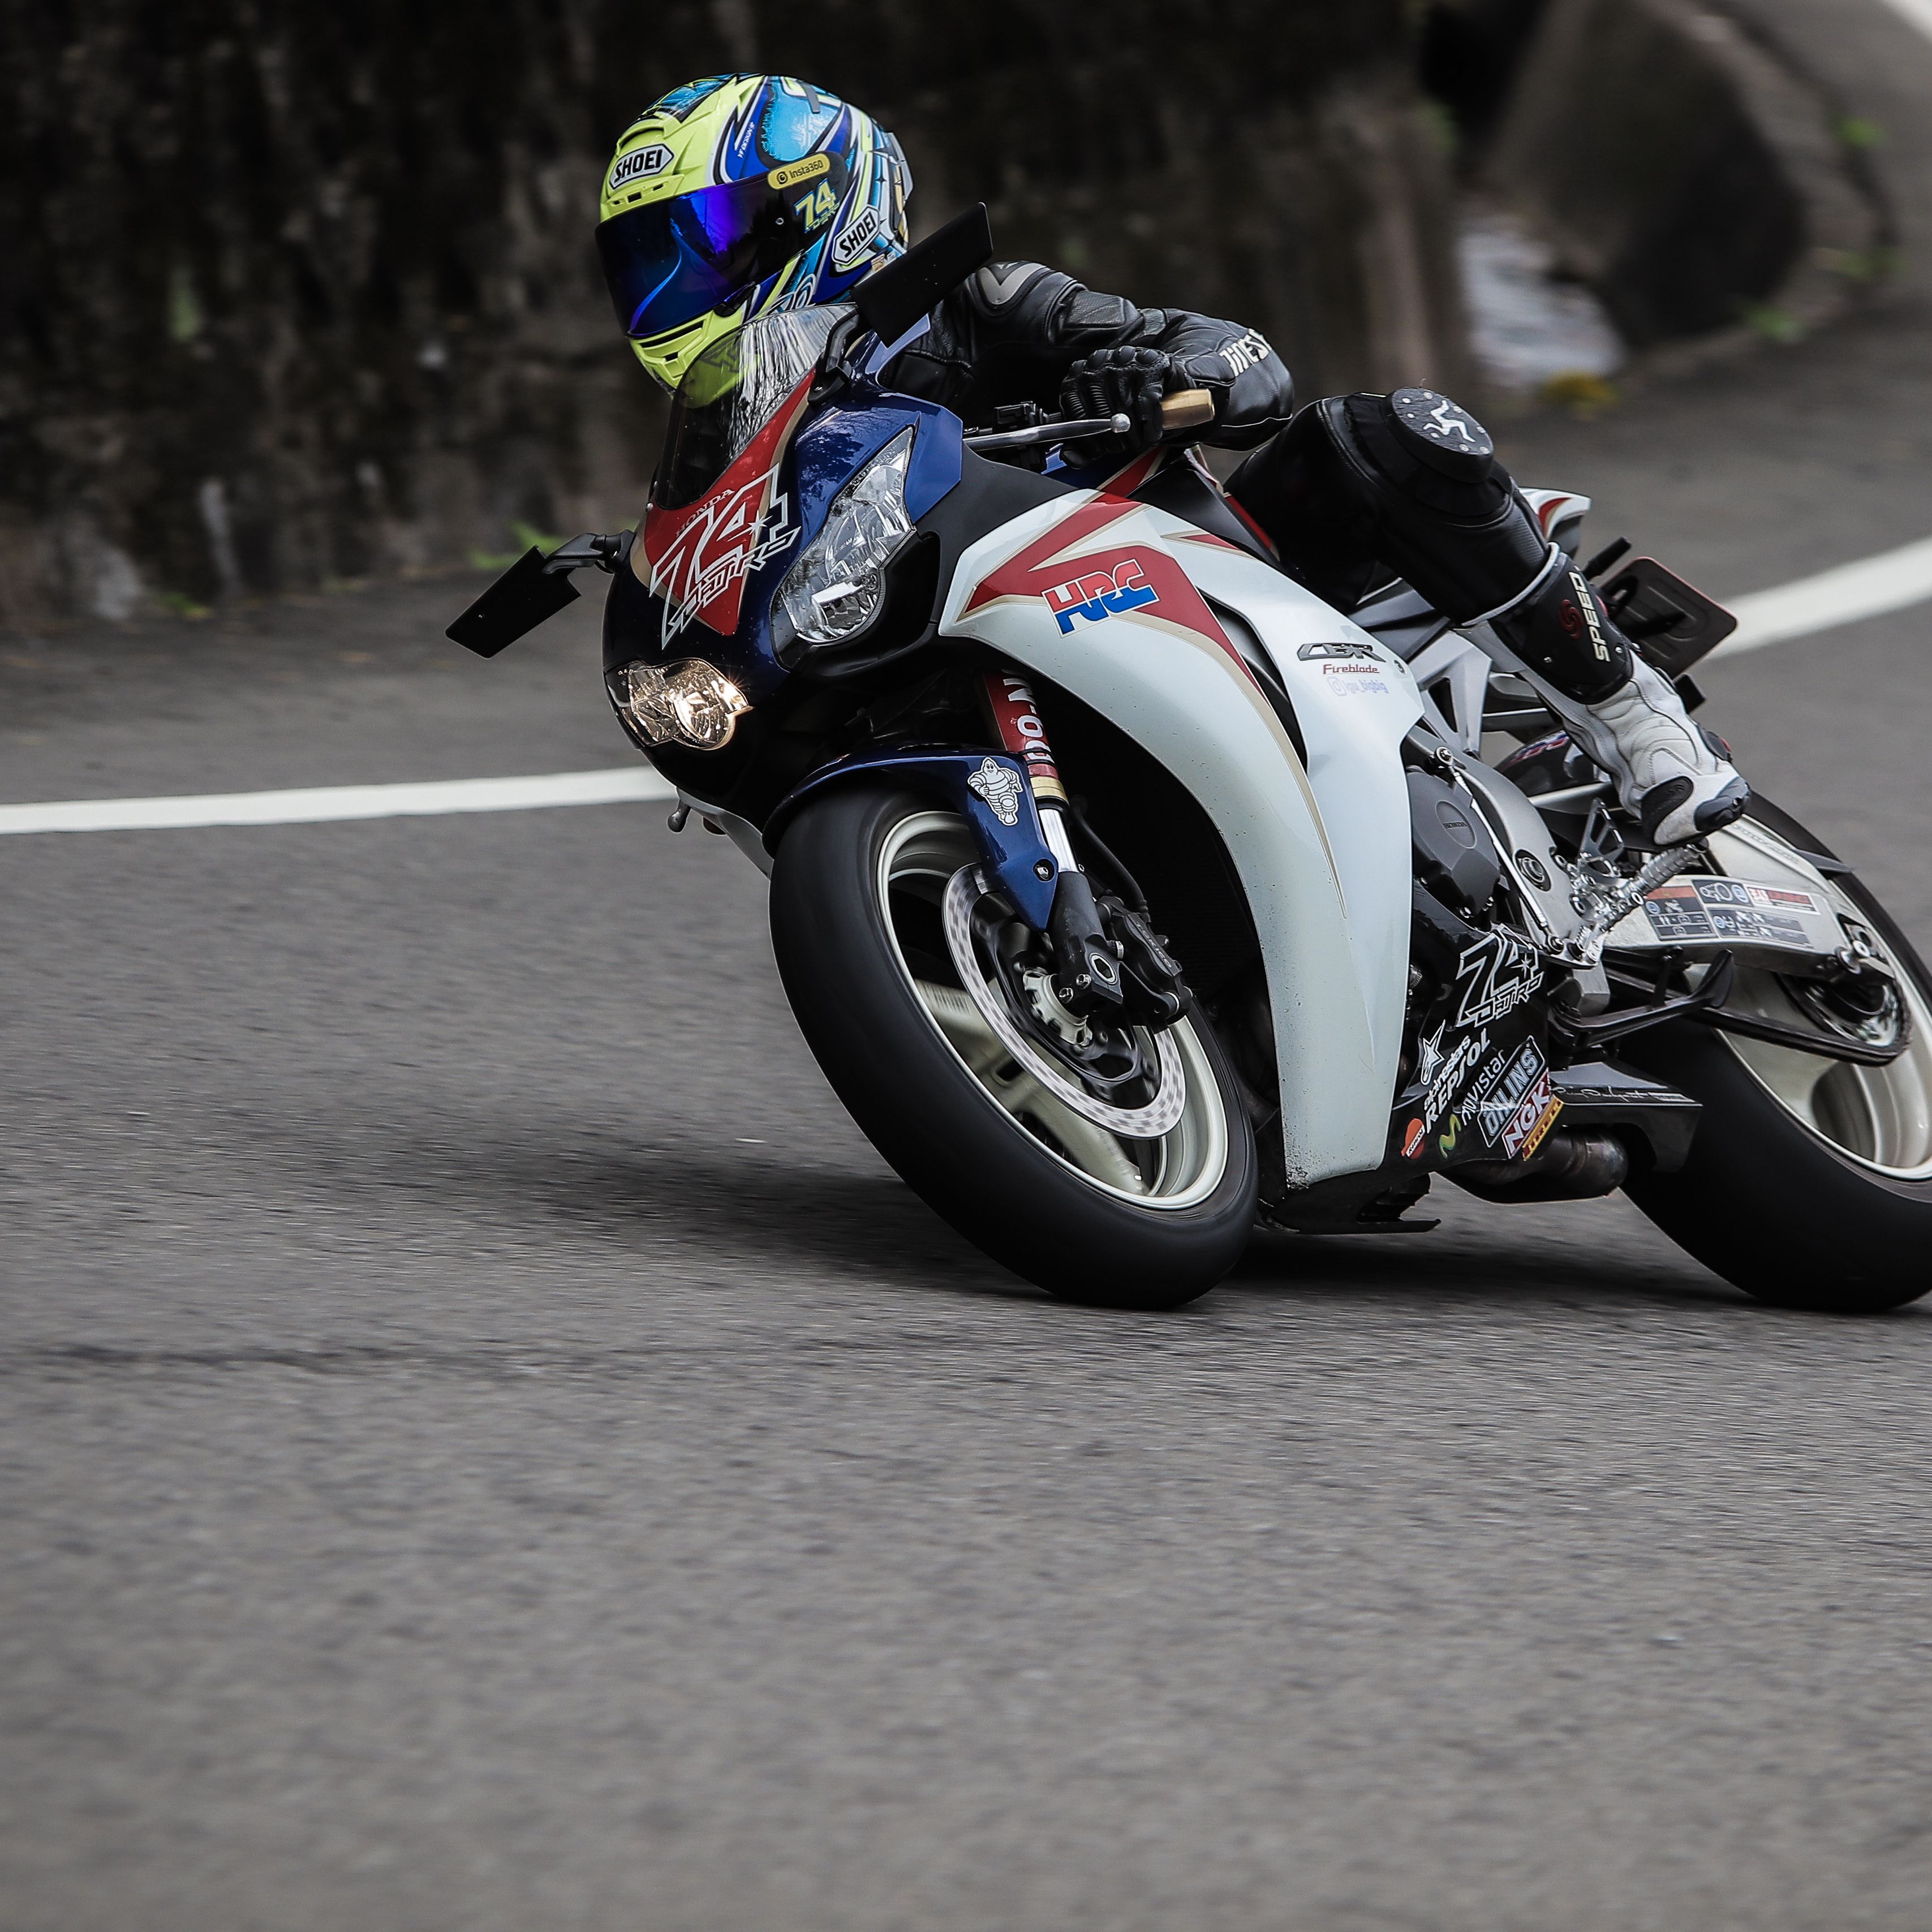 3415x3415 Wallpaper motorcycle, motorcyclist, helmet, racing, speed